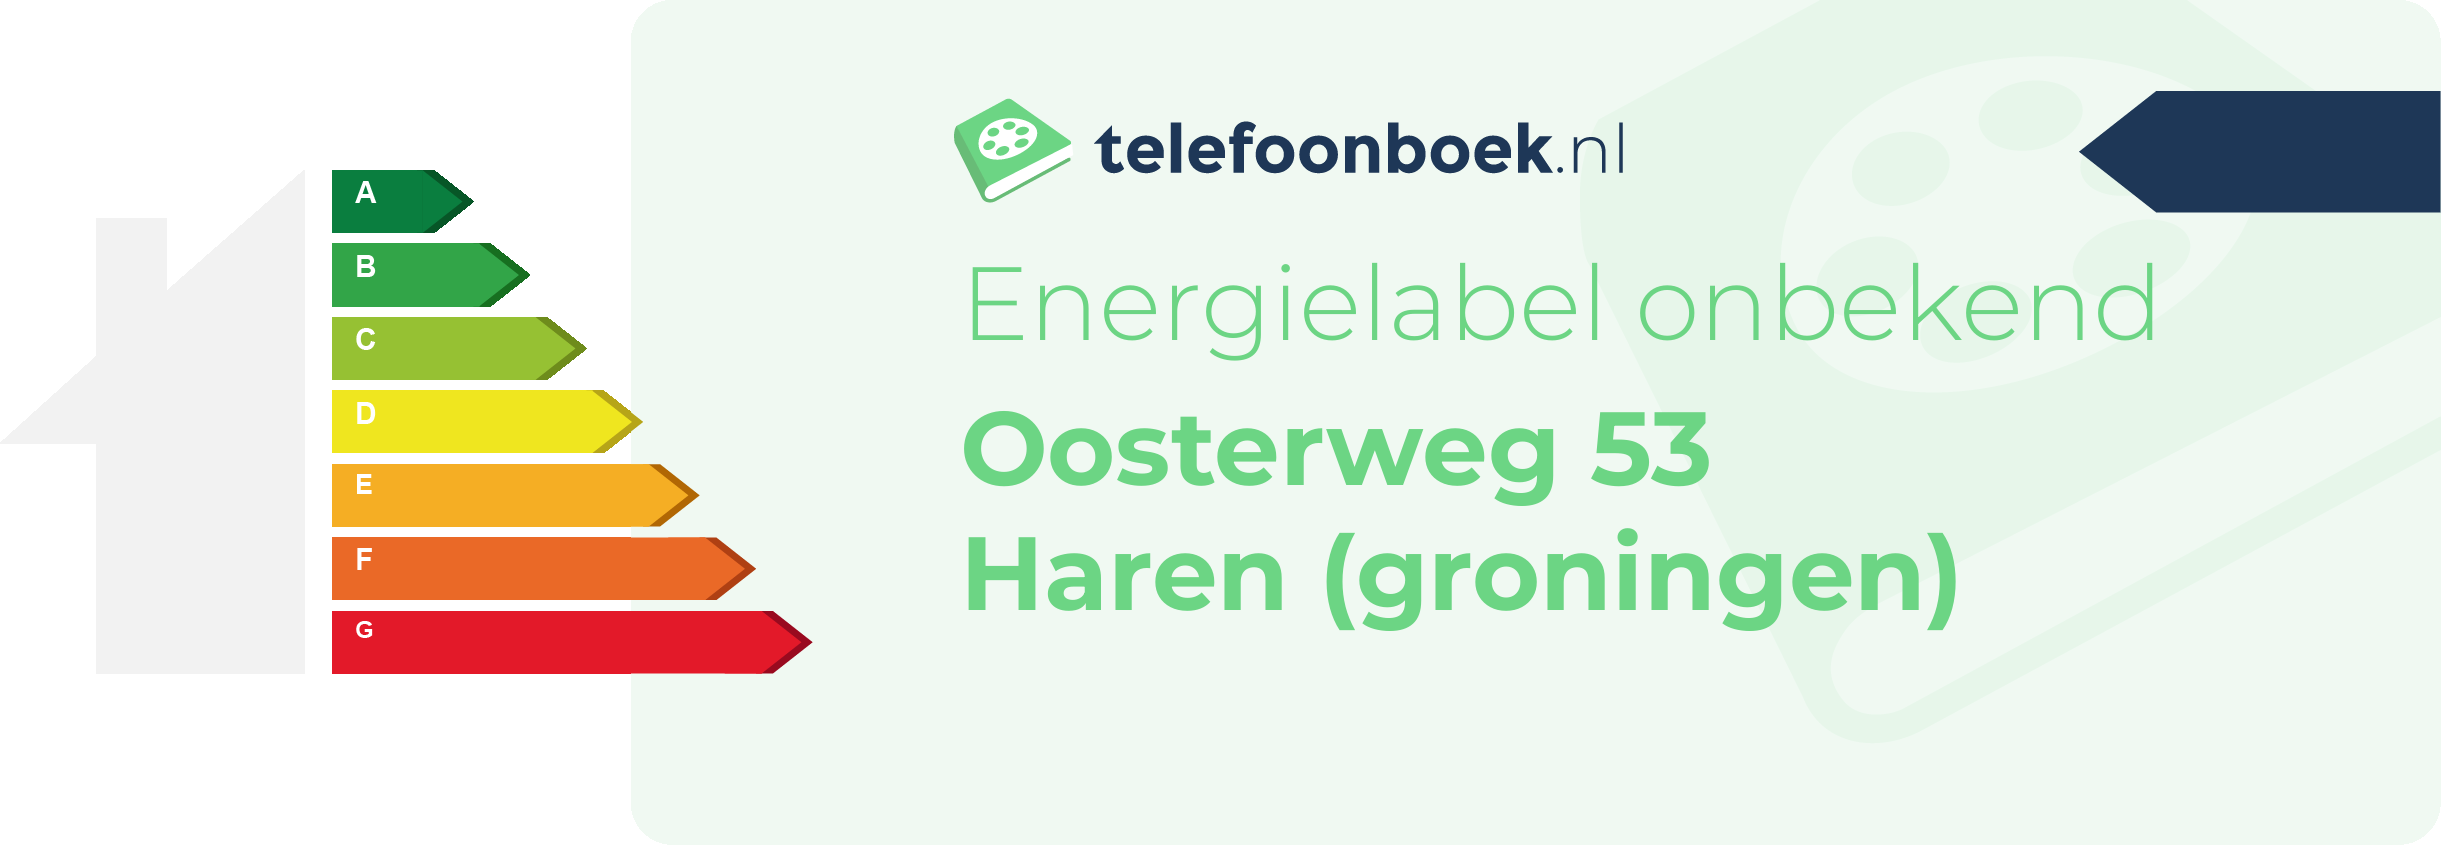 Energielabel Oosterweg 53 Haren (Groningen)